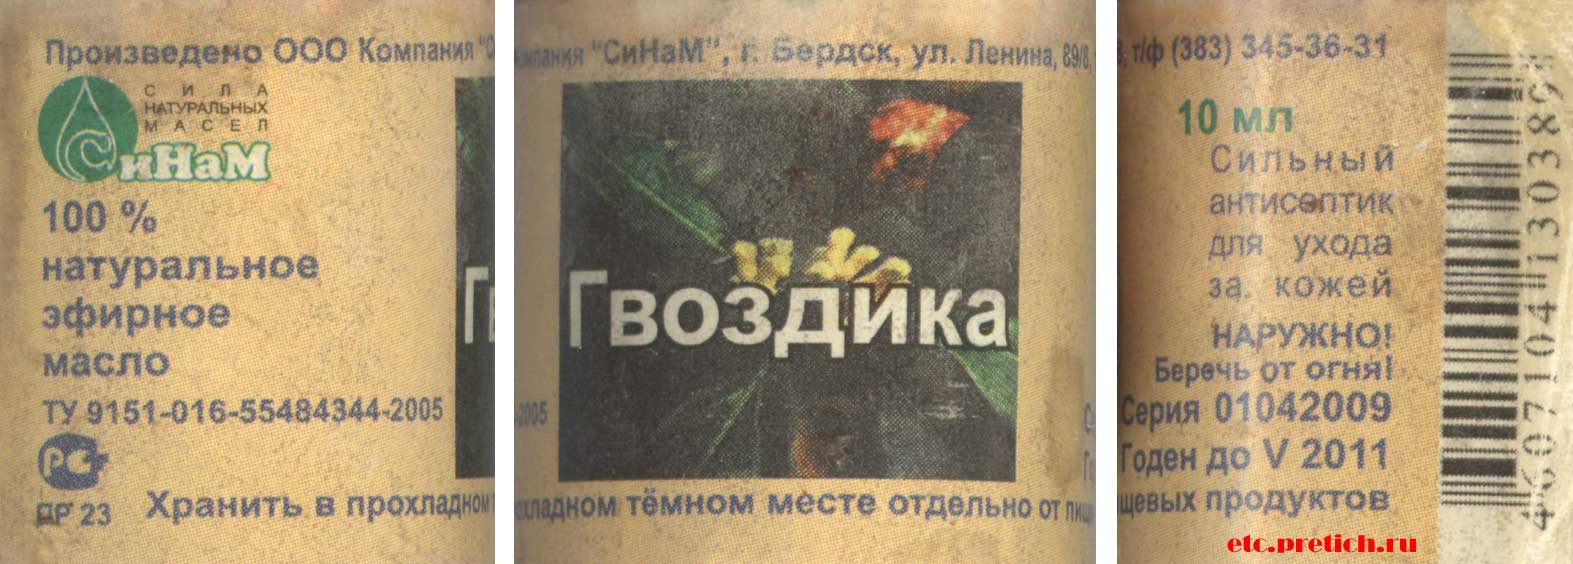 этикетка Гвоздика - эфирное масло, СиНаМ 2009 года